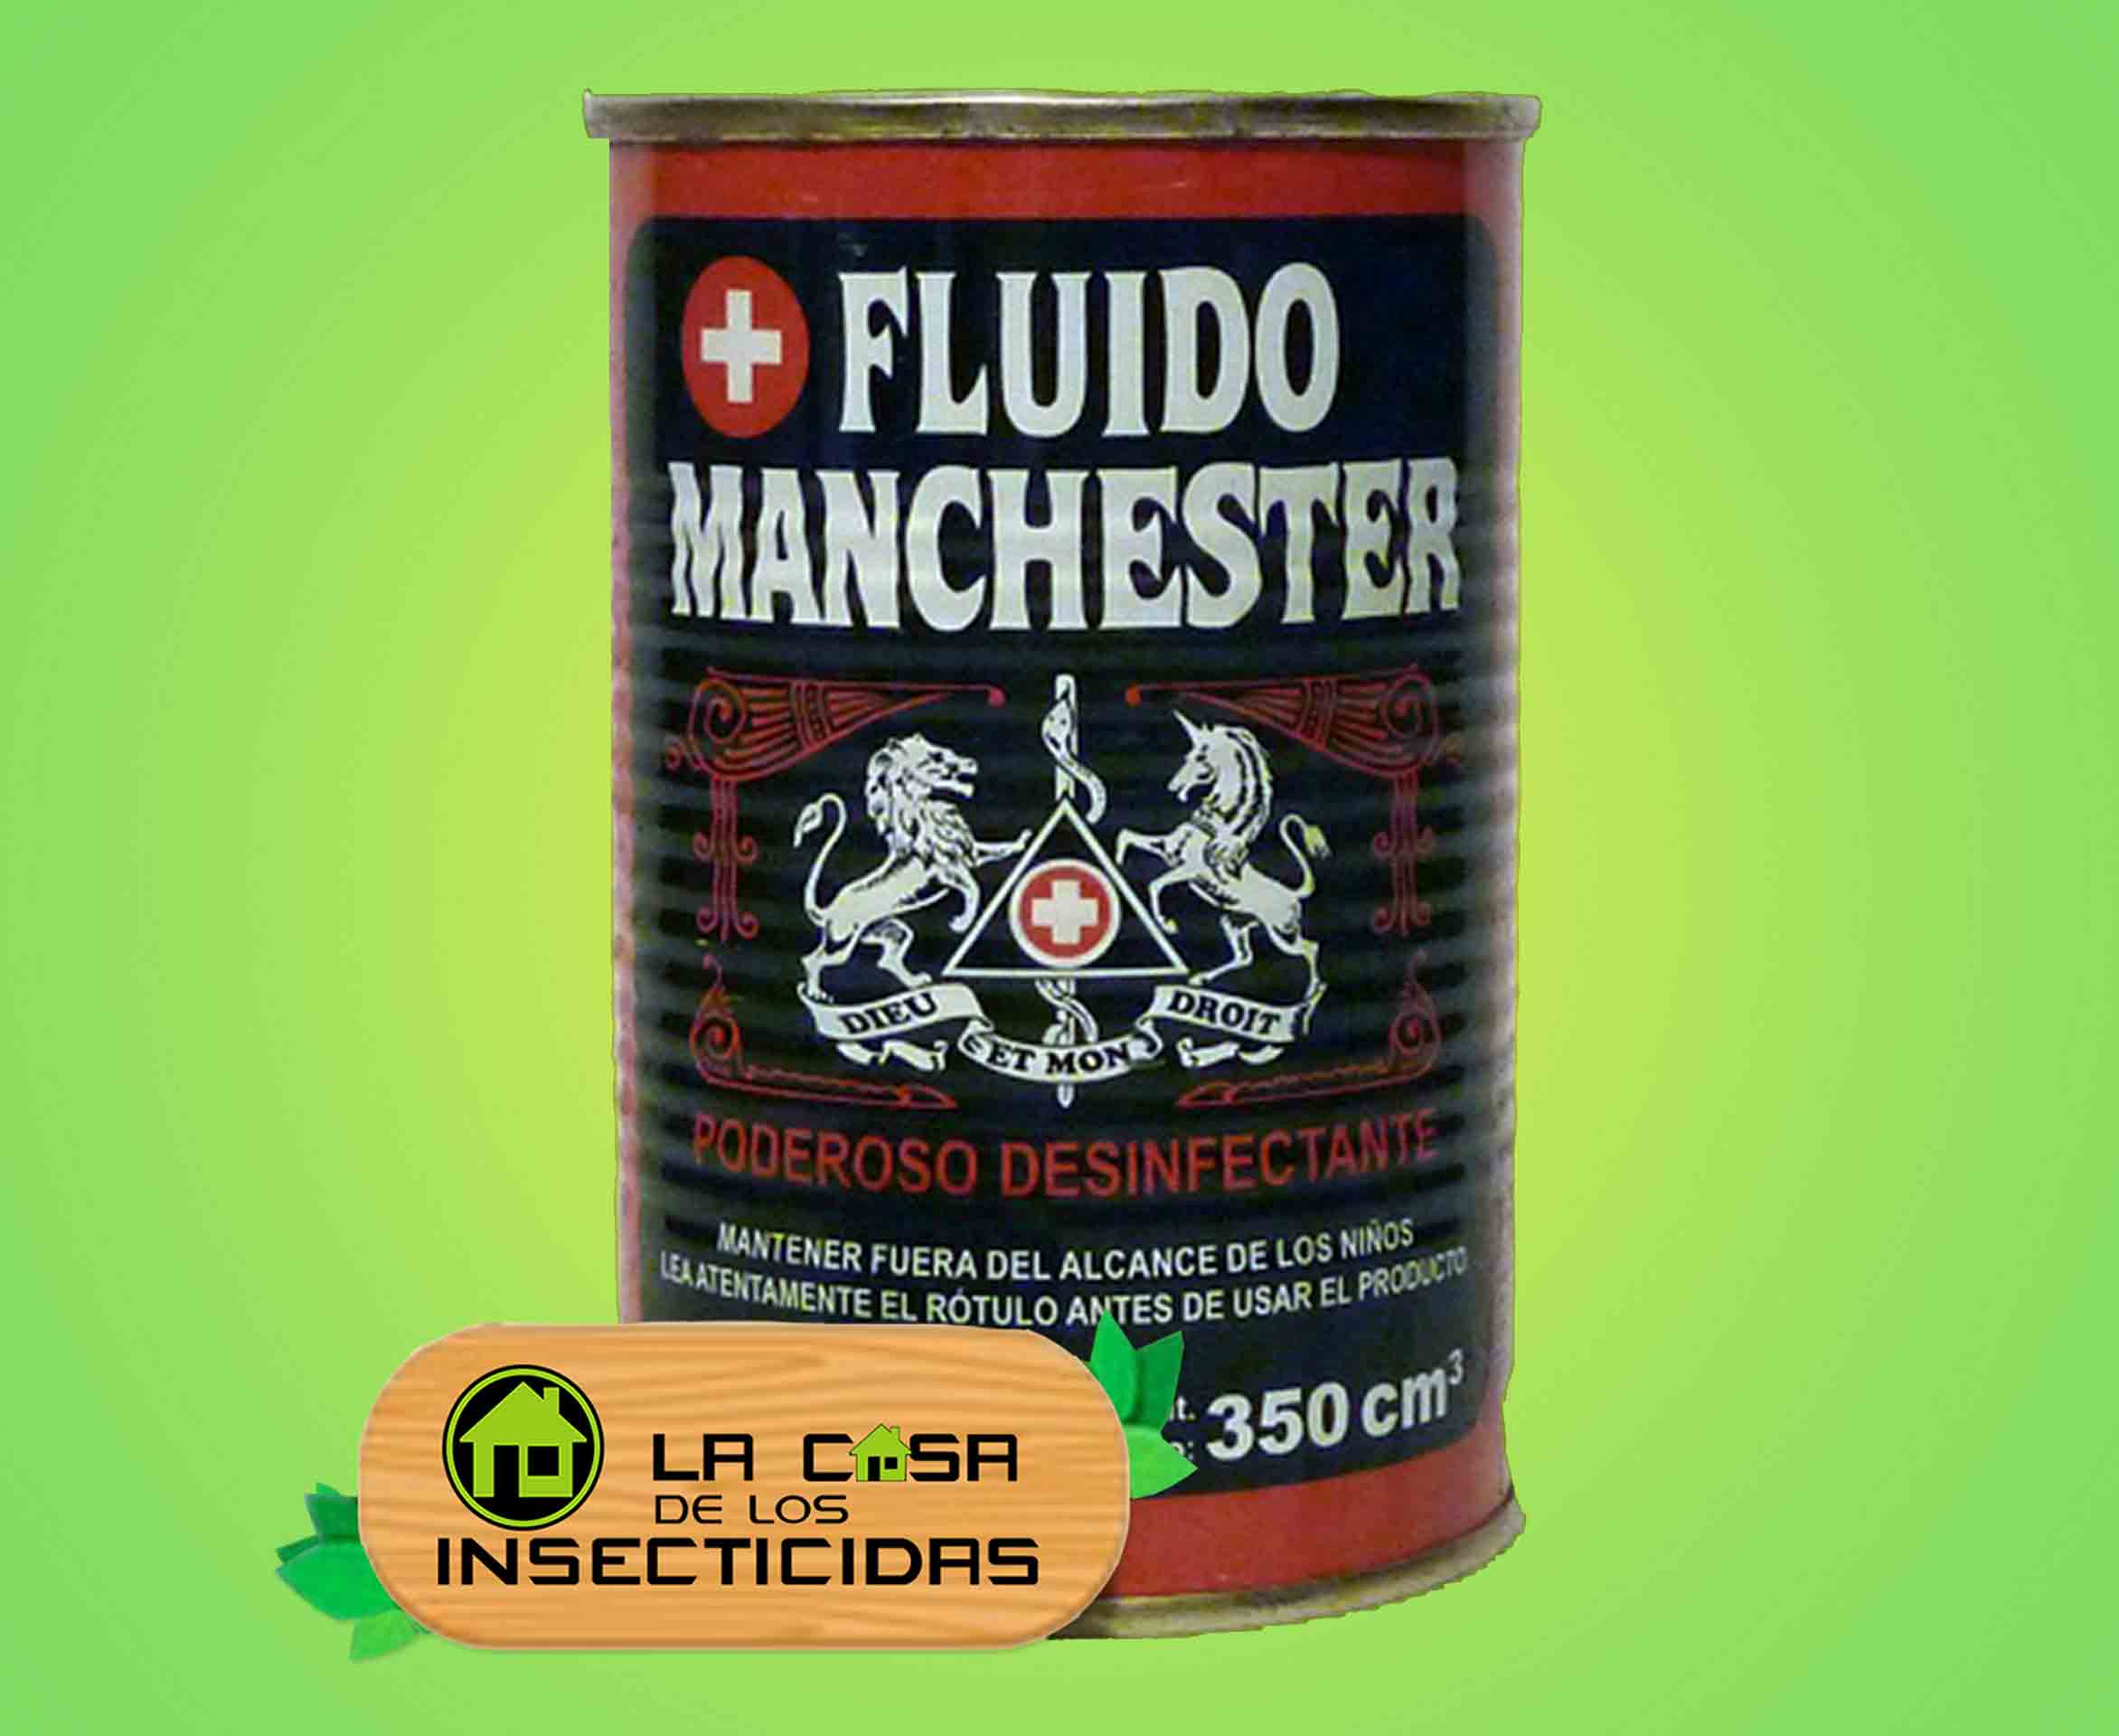 Fluido Manchester 350cc desinfectante sanitizante